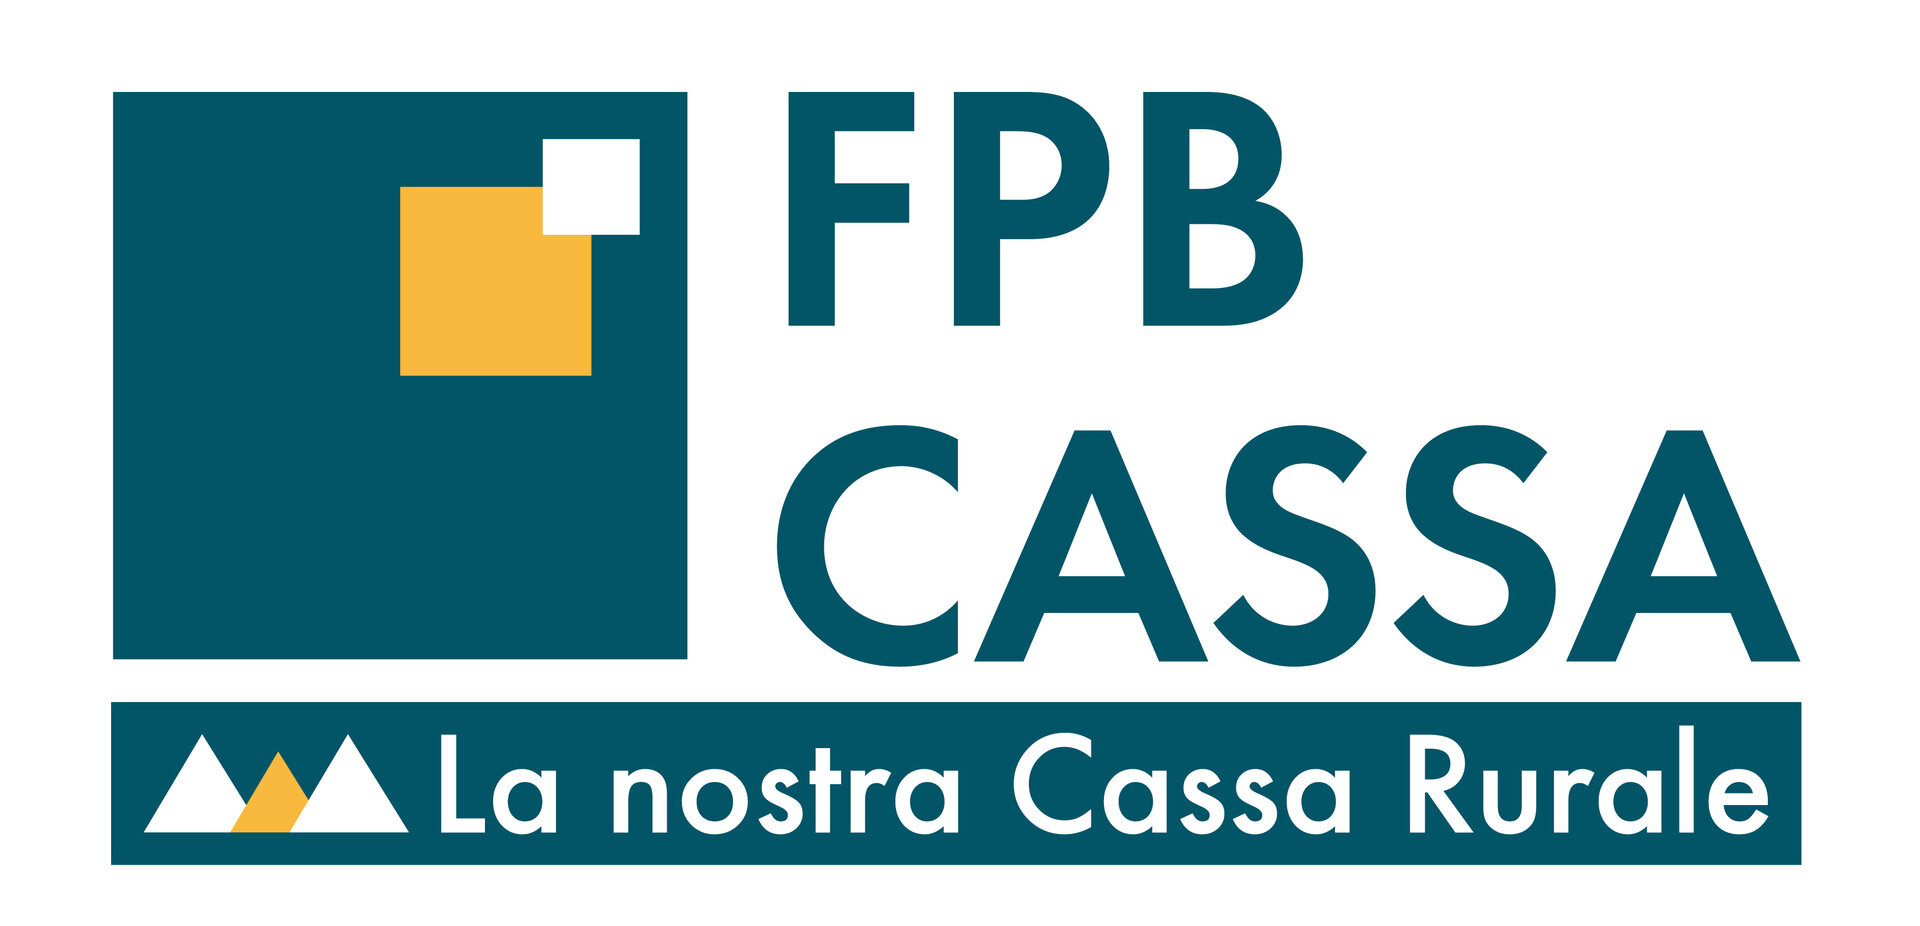 FPB Cassa Di Fassa Primiero Belluno   Zweigstelle Von Campitello Di Fassa